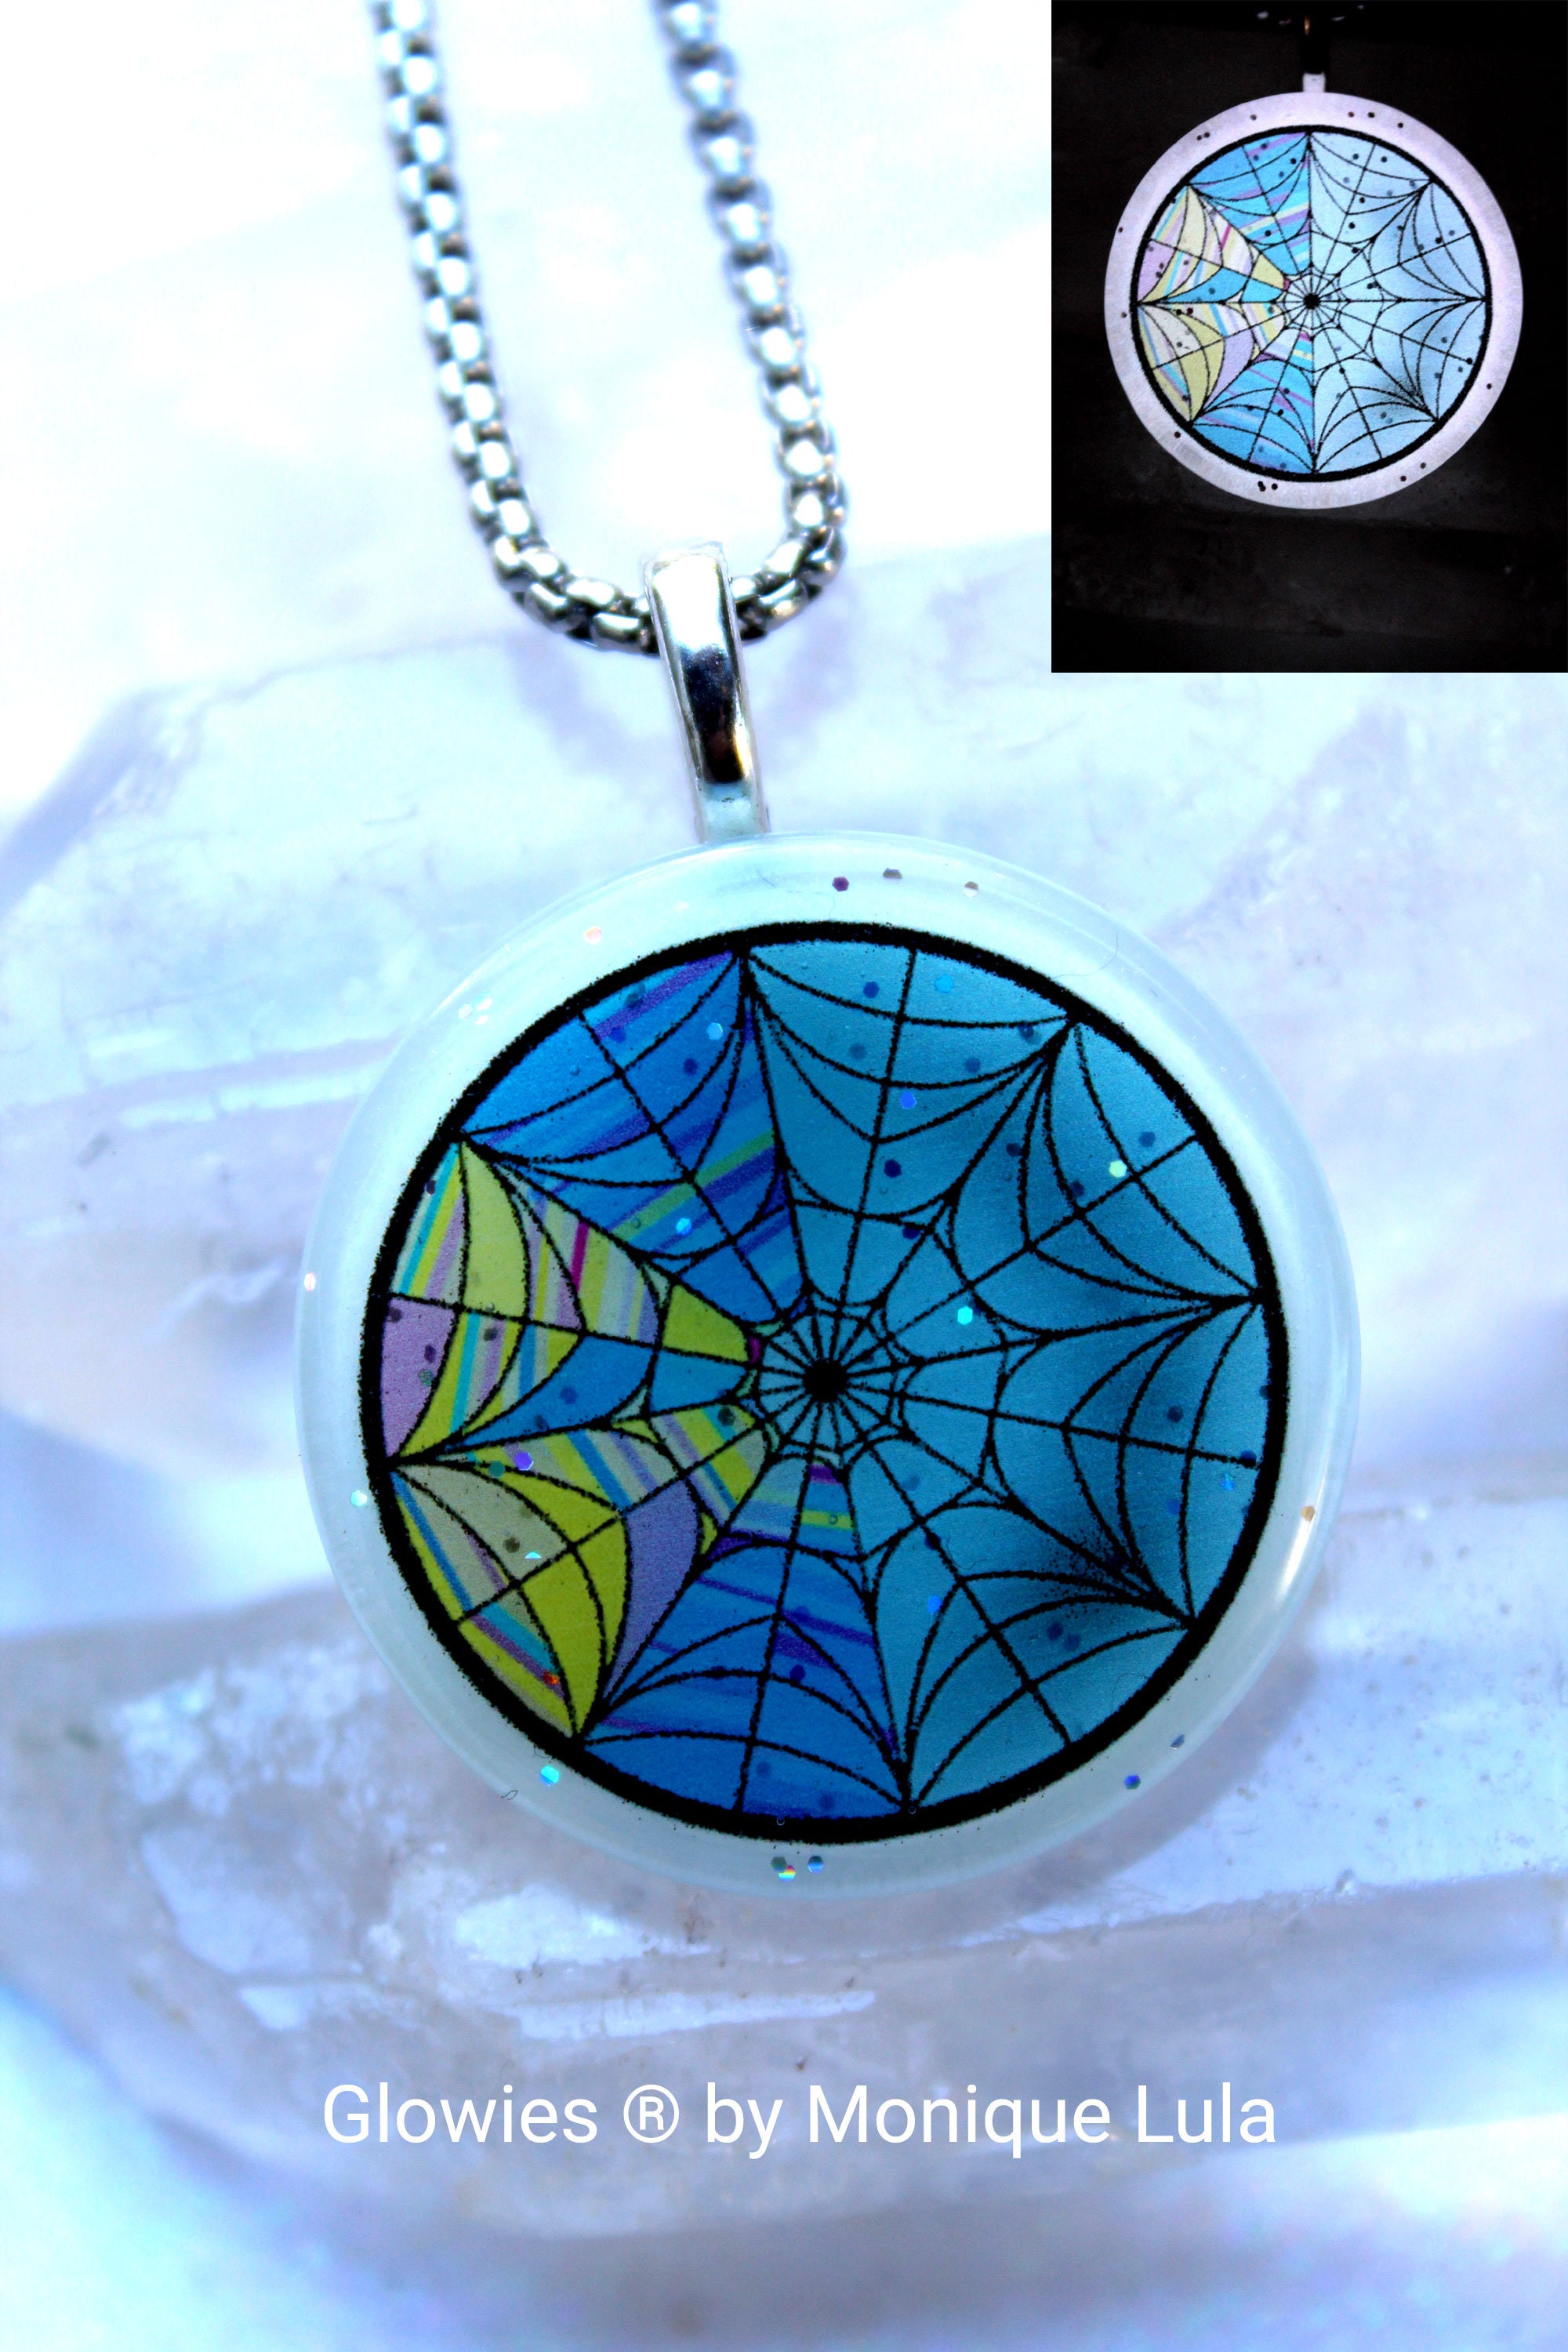 Glowies Glow Jewelry Art & Decor - Key with Crescent Moon & Stars Crystal  Glow Glass Necklace